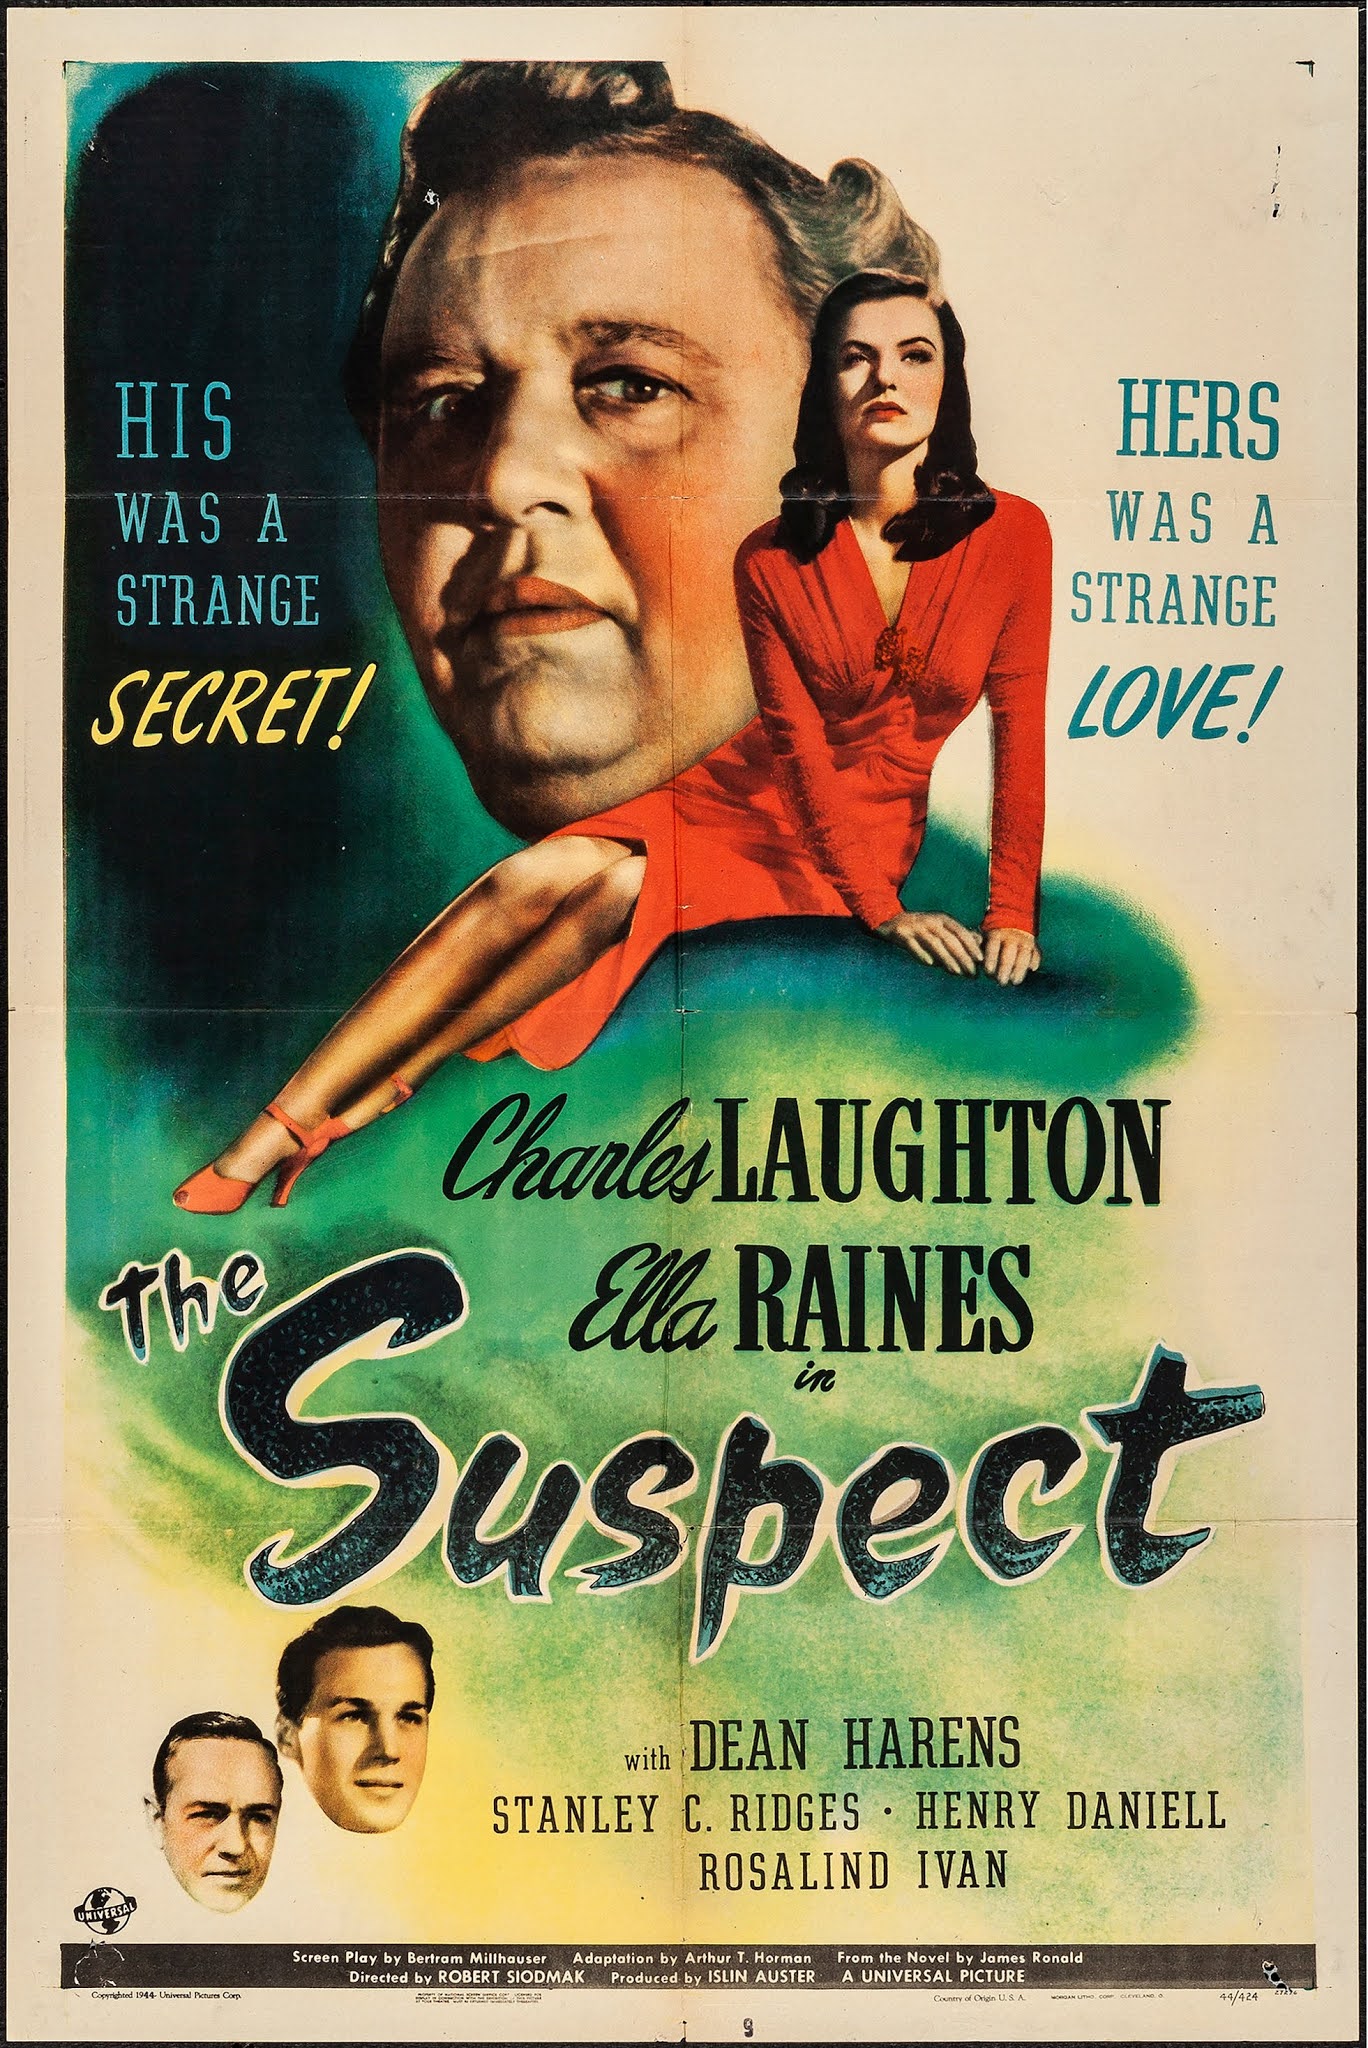 Film Noir THE SUSPECT (1944)